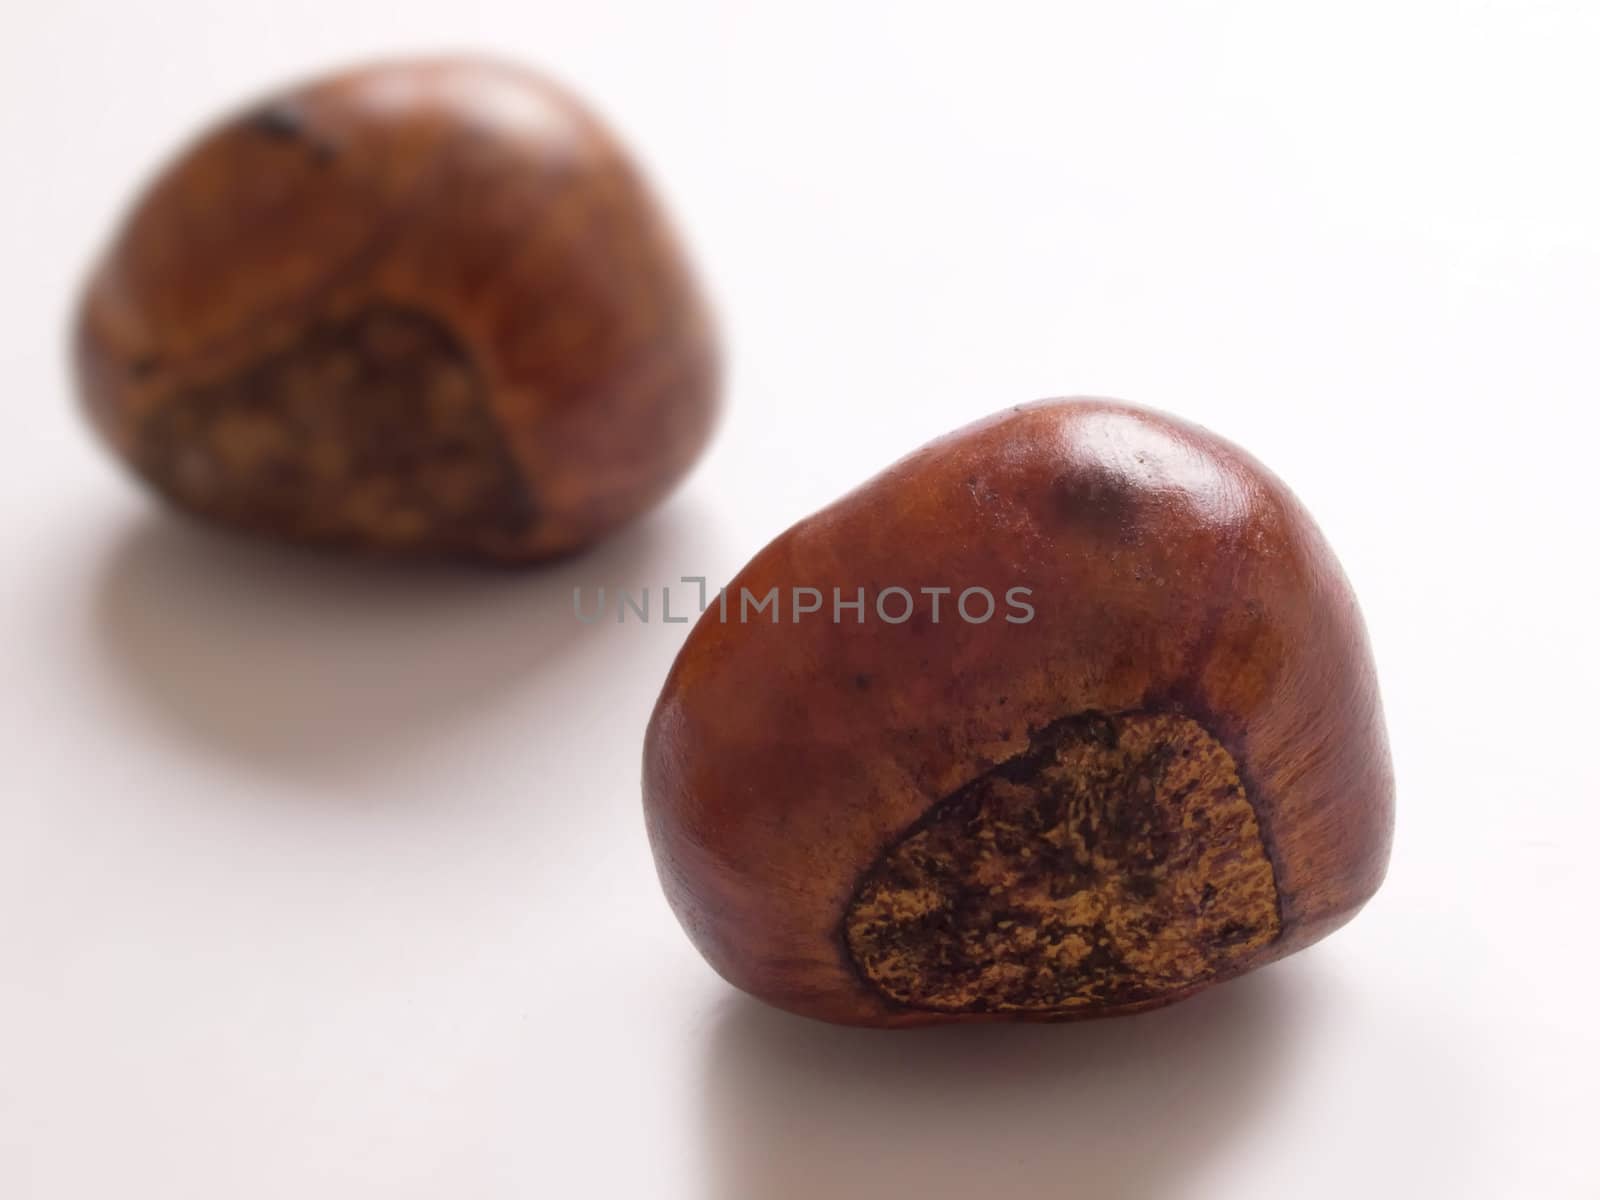 roasted chestnuts by zkruger